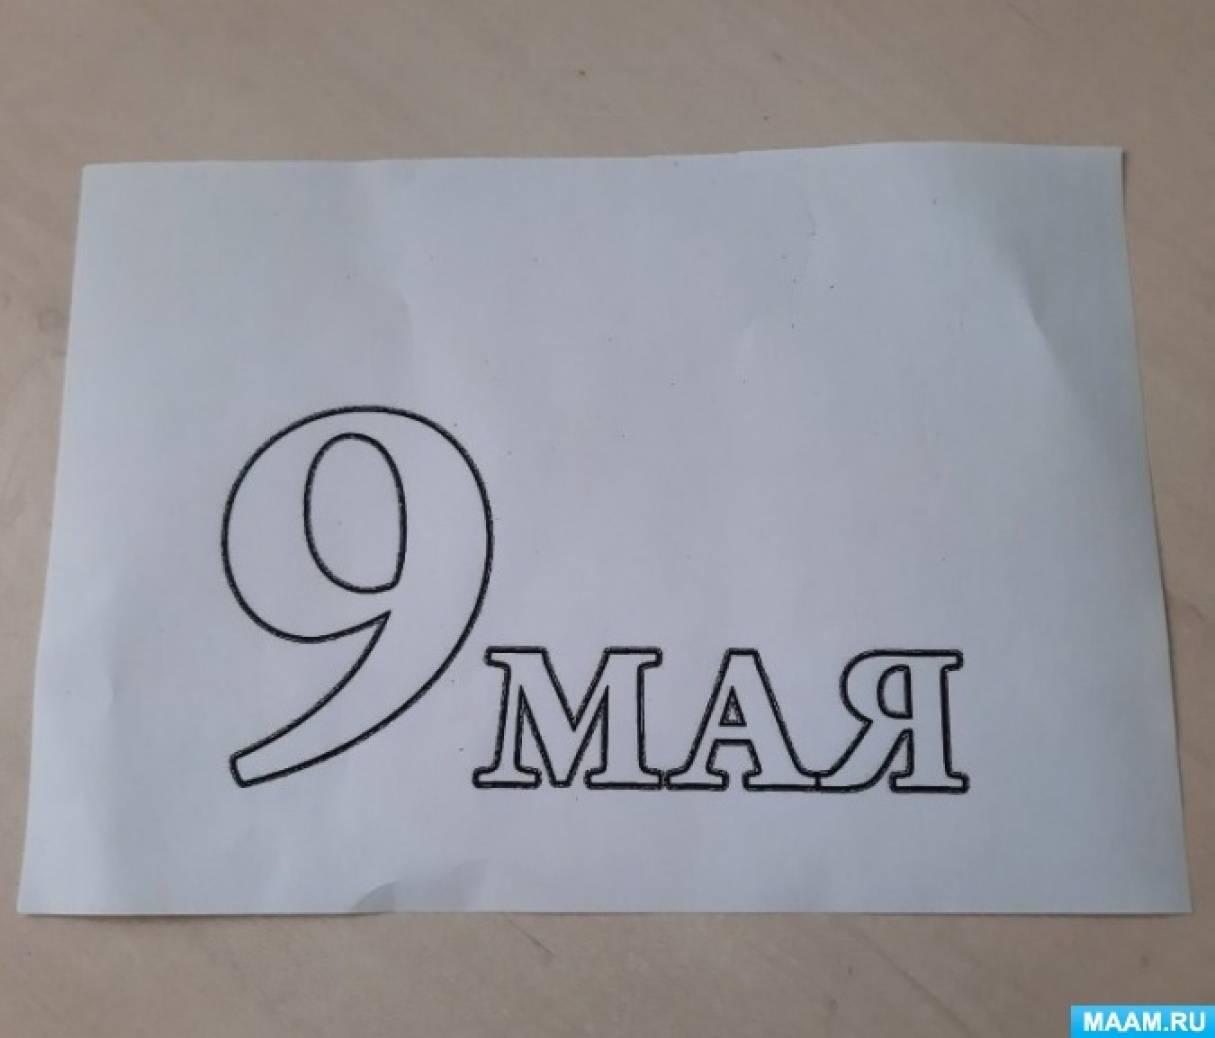 Как будут перекрывать улицы Ульяновска с 5 по 9 мая. СХЕМЫ - Новости Ульяновска 